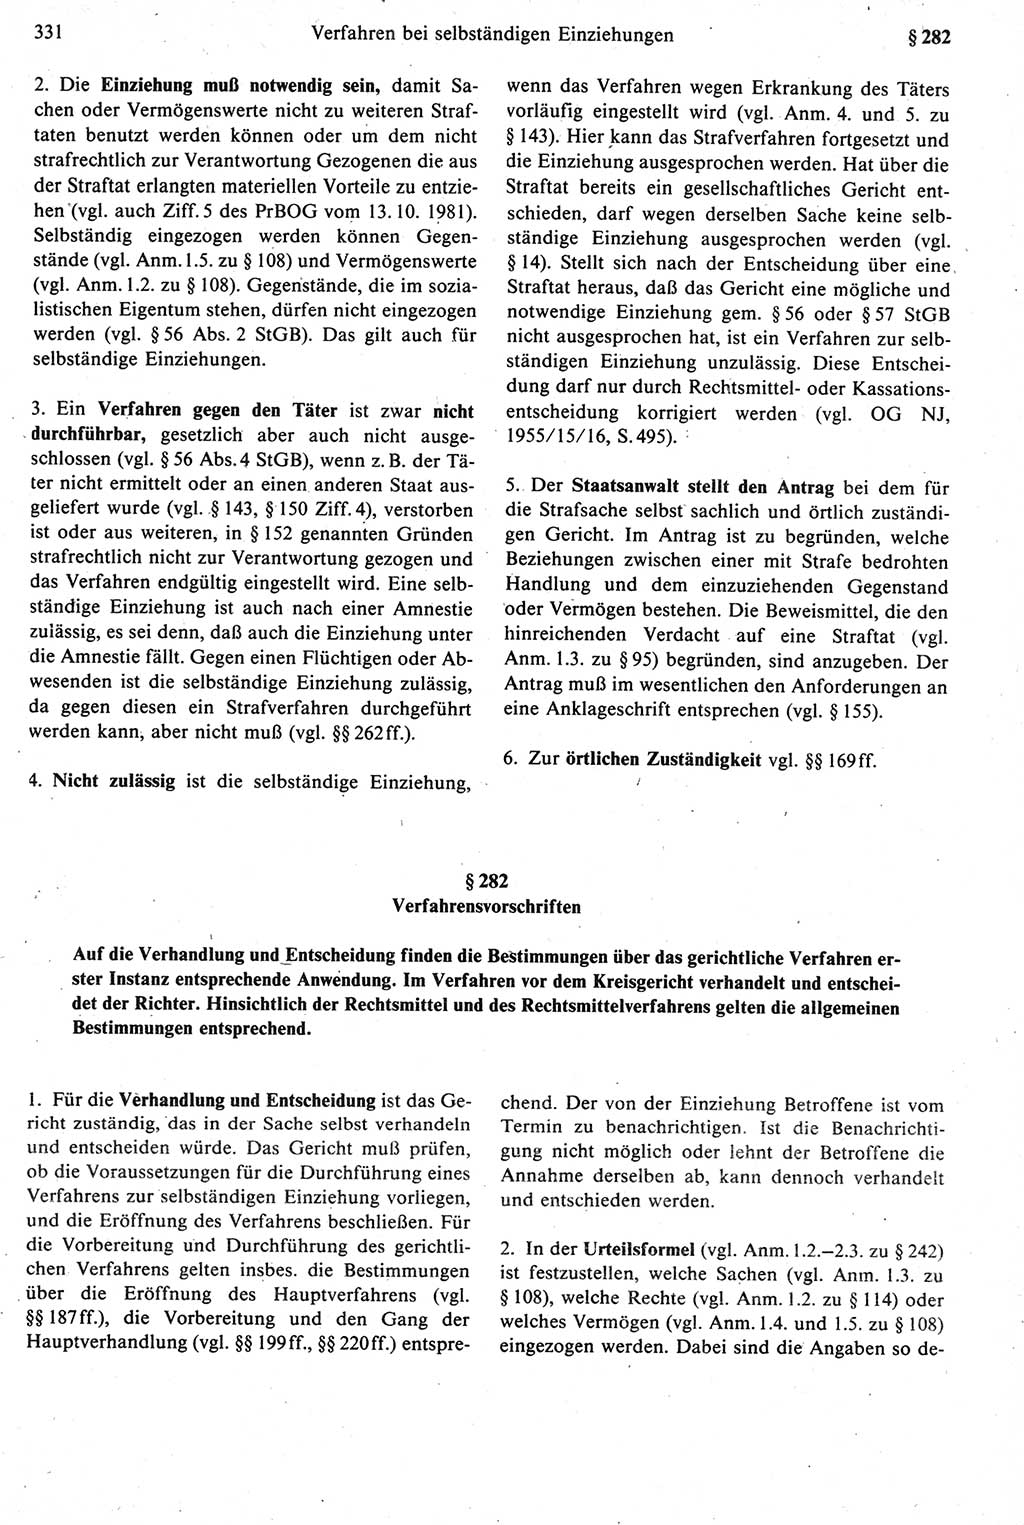 Strafprozeßrecht der DDR [Deutsche Demokratische Republik], Kommentar zur Strafprozeßordnung (StPO) 1987, Seite 331 (Strafprozeßr. DDR Komm. StPO 1987, S. 331)